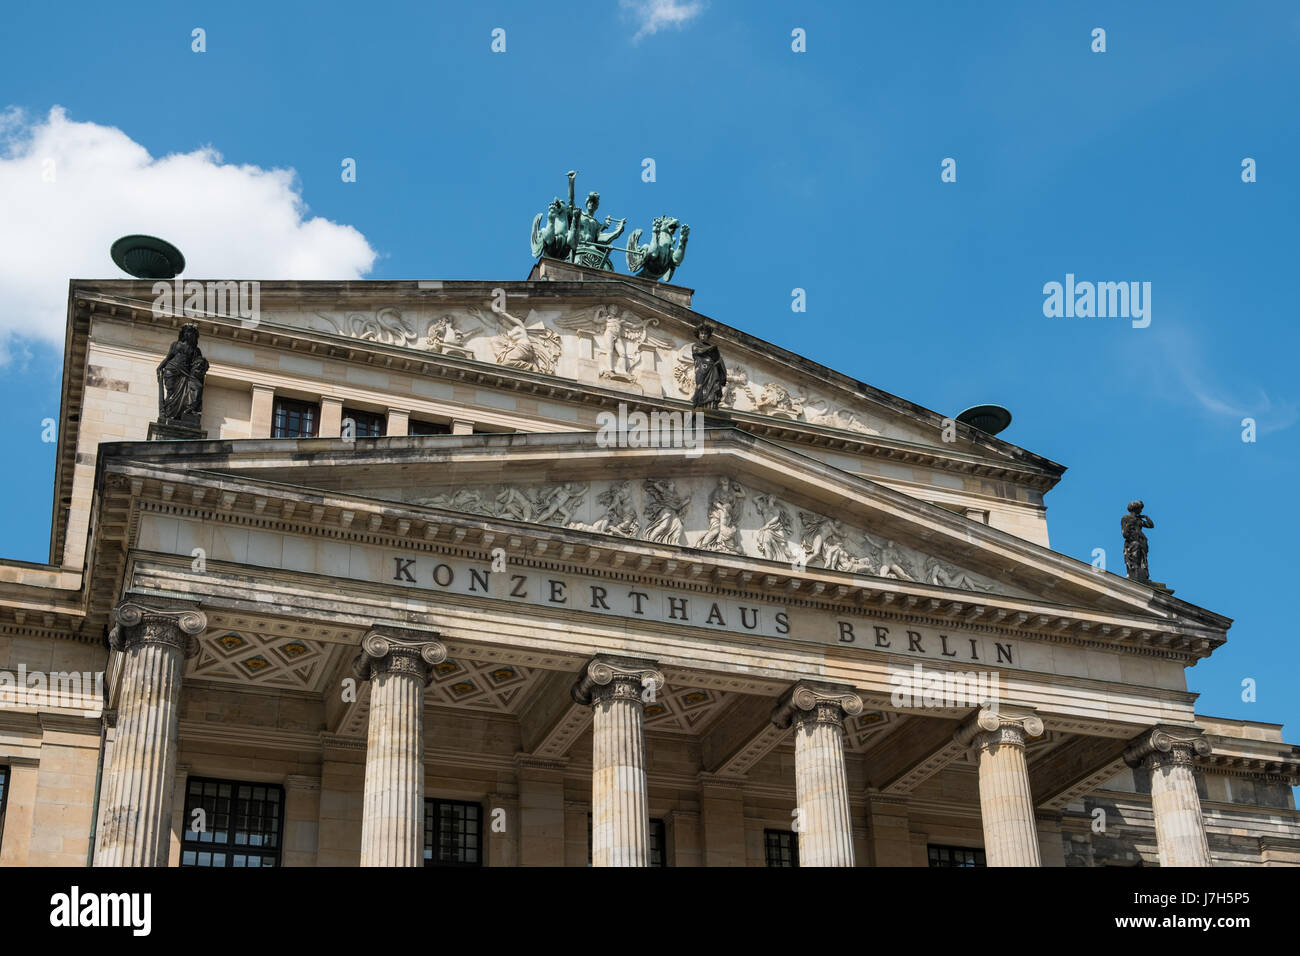 Berlino, Germania - 23 maggio 2017: la facciata della sala concerti Konzerthaus () di Berlino a Gendarmenmarkt a Berlino. Foto Stock